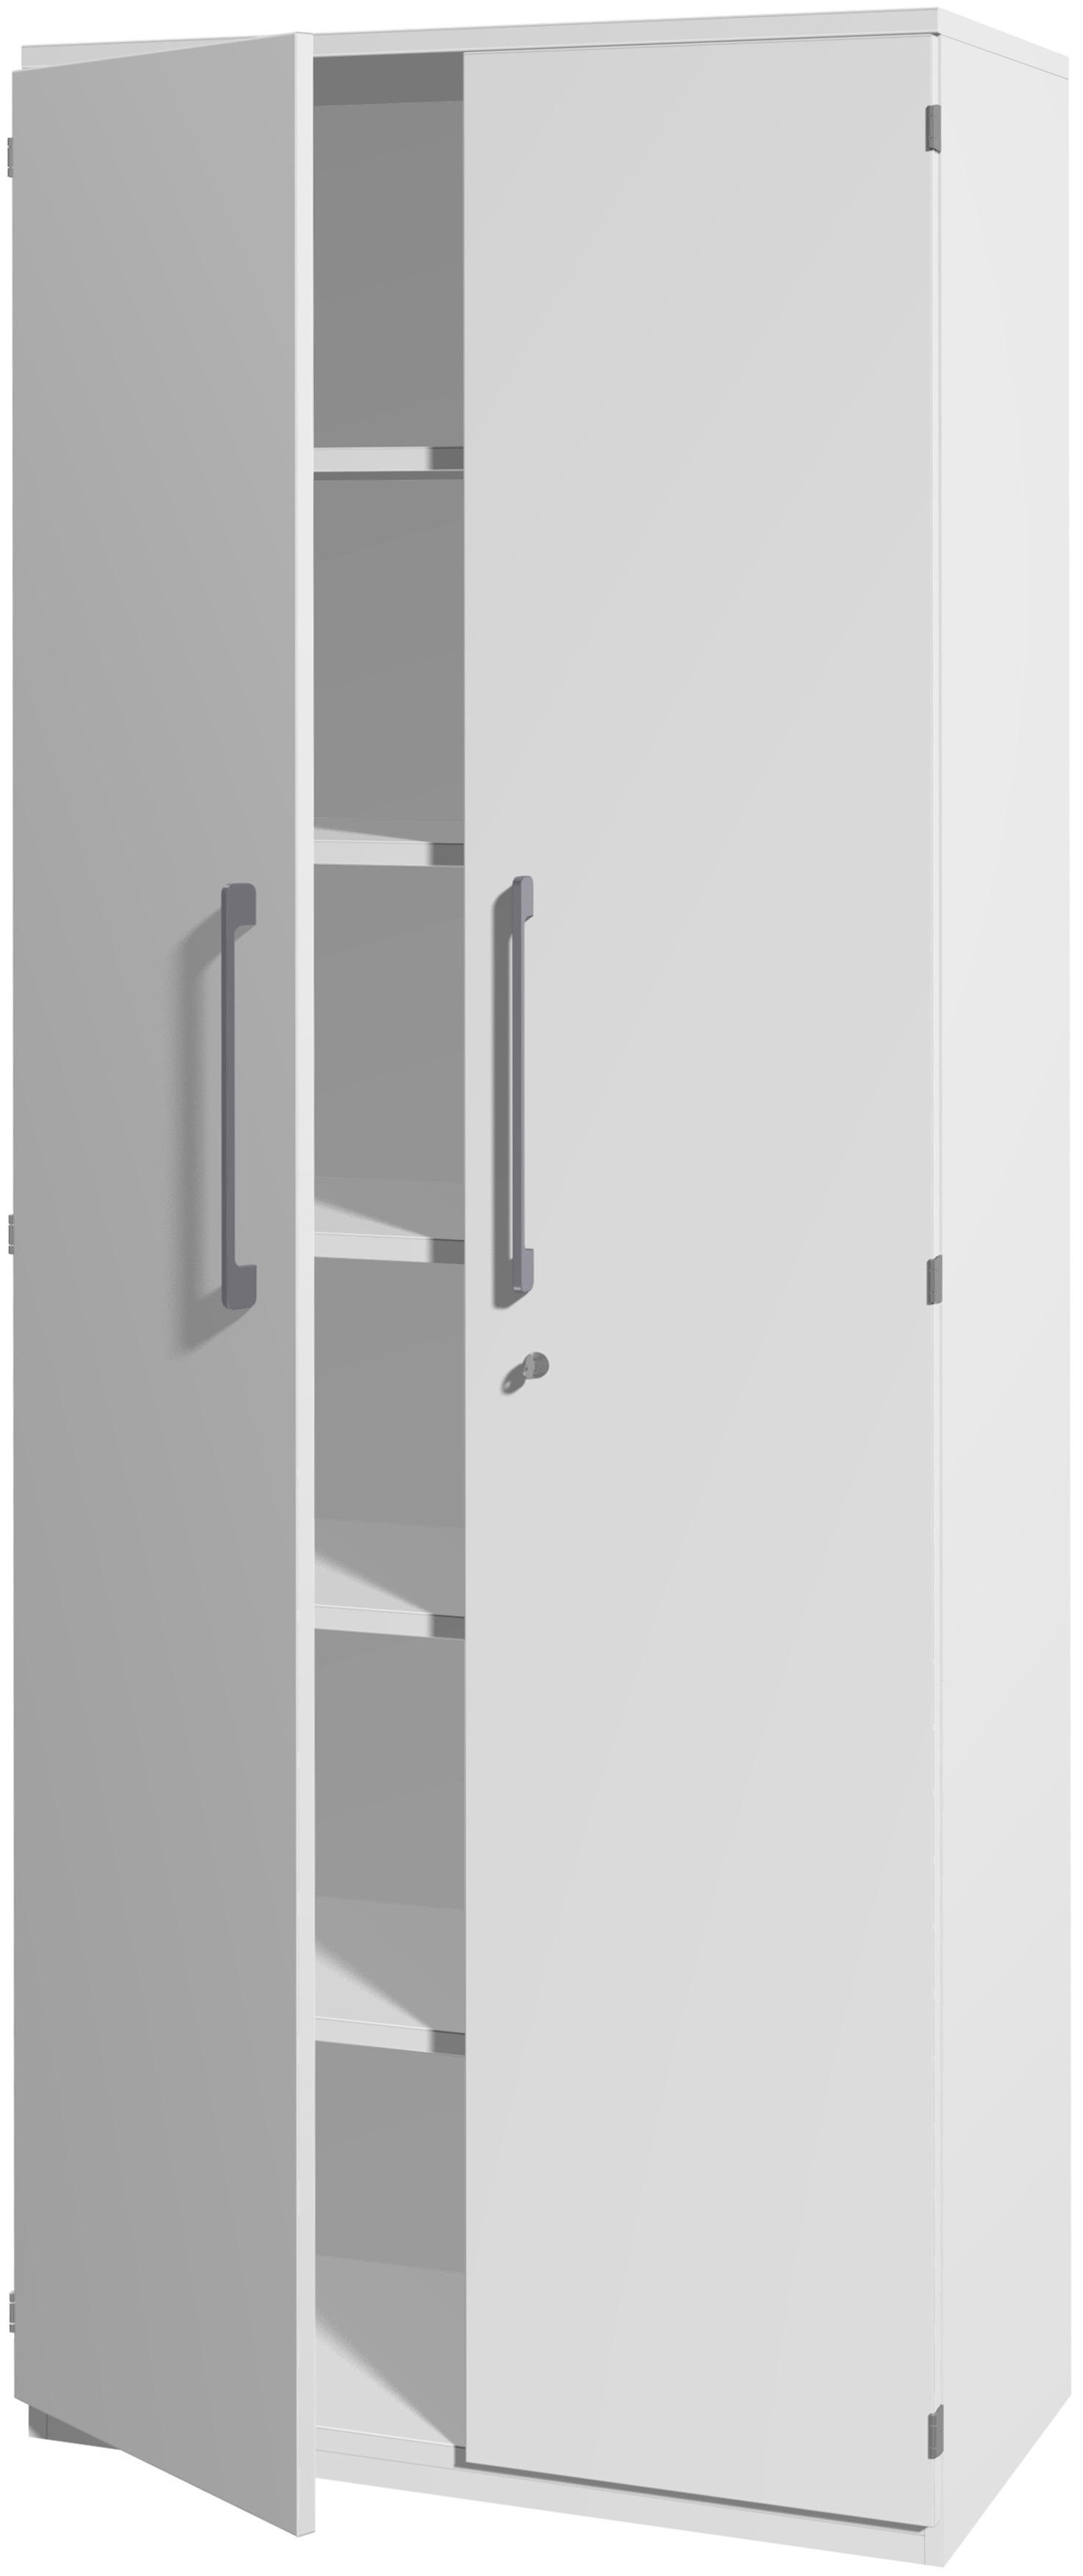 AKTENSCHRANK Weiß  - Weiß, Design, Holzwerkstoff (81,9/217,4/43cm) - Moderano